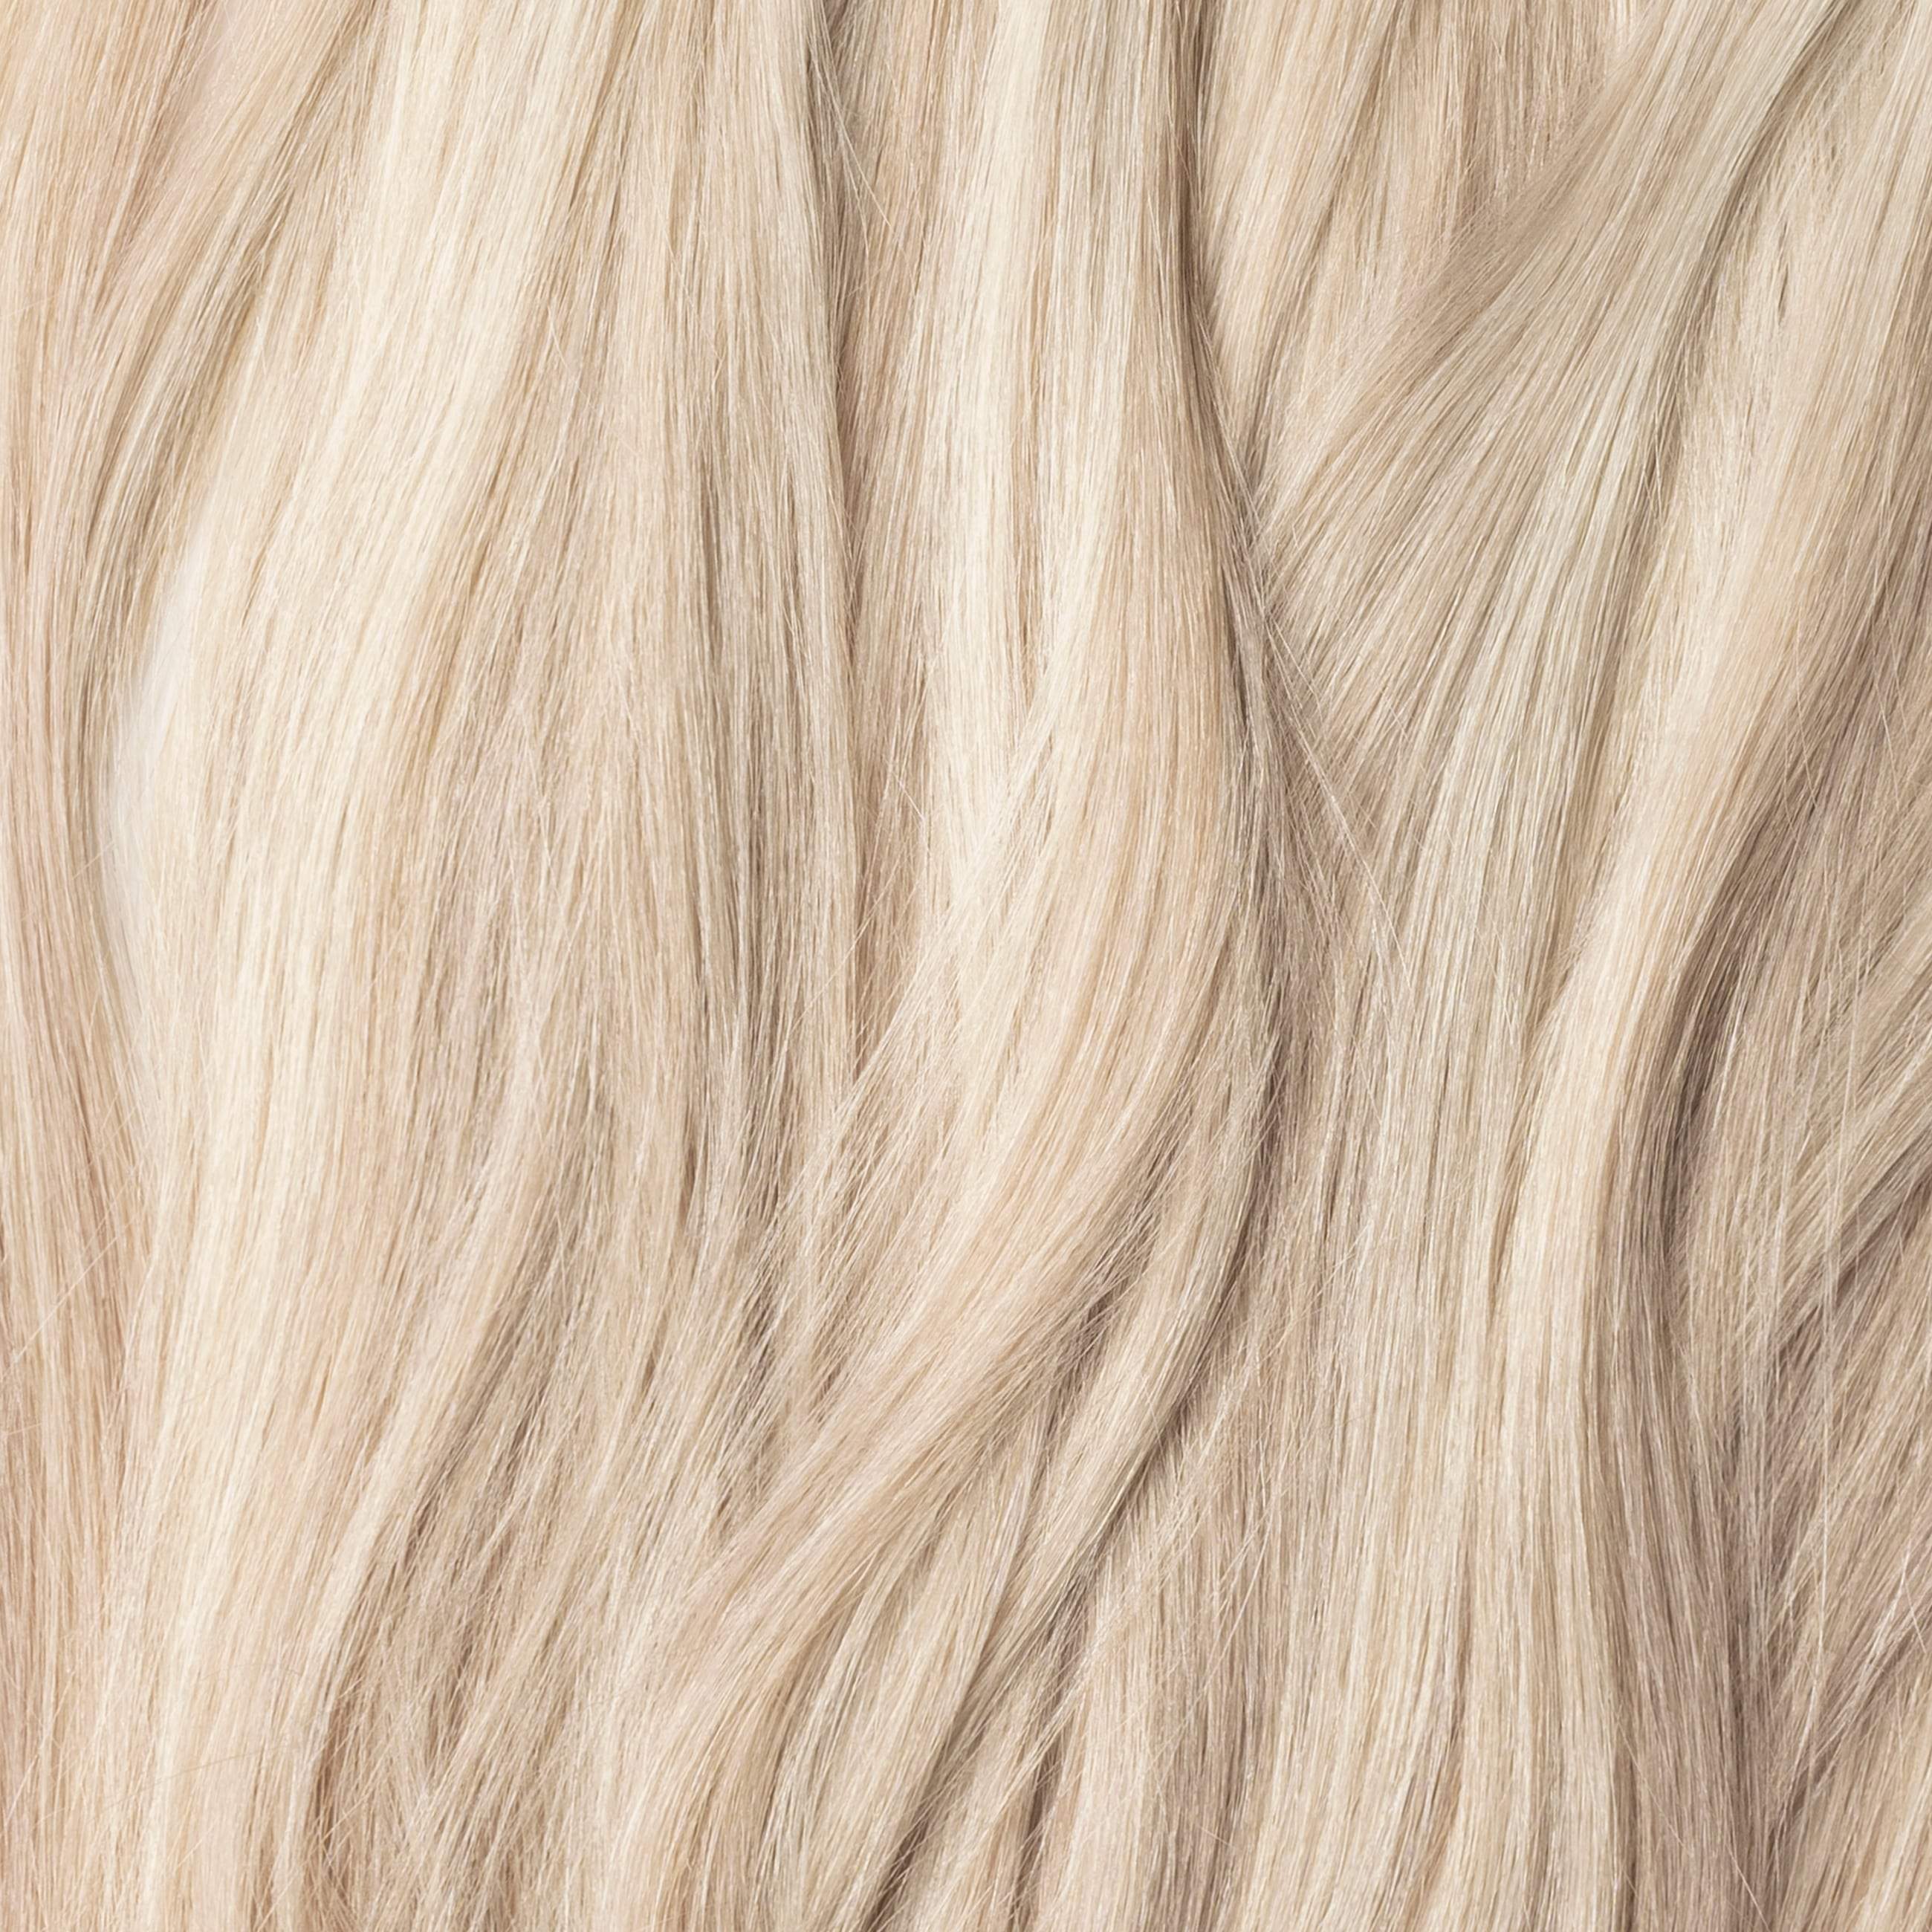 Clip in Ponytail - Light Beige Blonde Mix 16B/60B